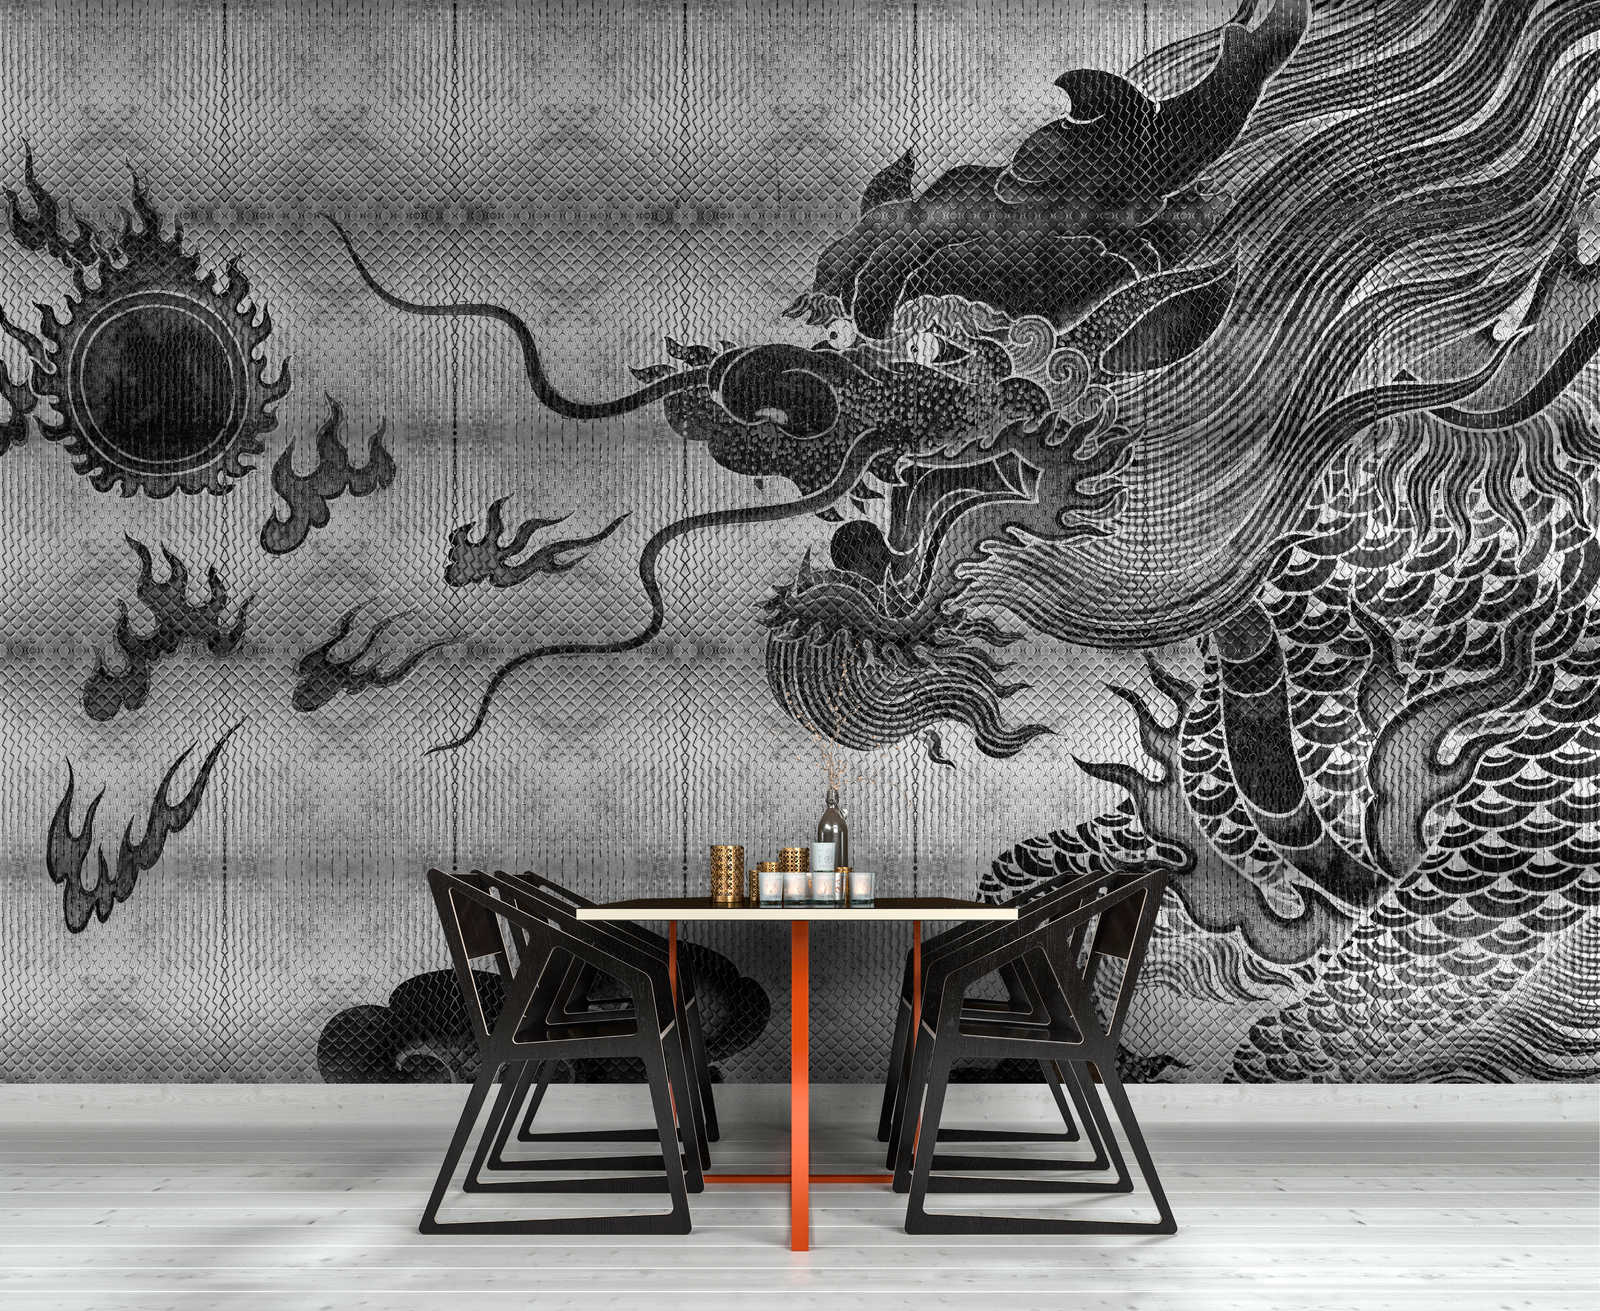             Shenzen 3 - Papier peint dragon argenté métallique de style asiatique
        